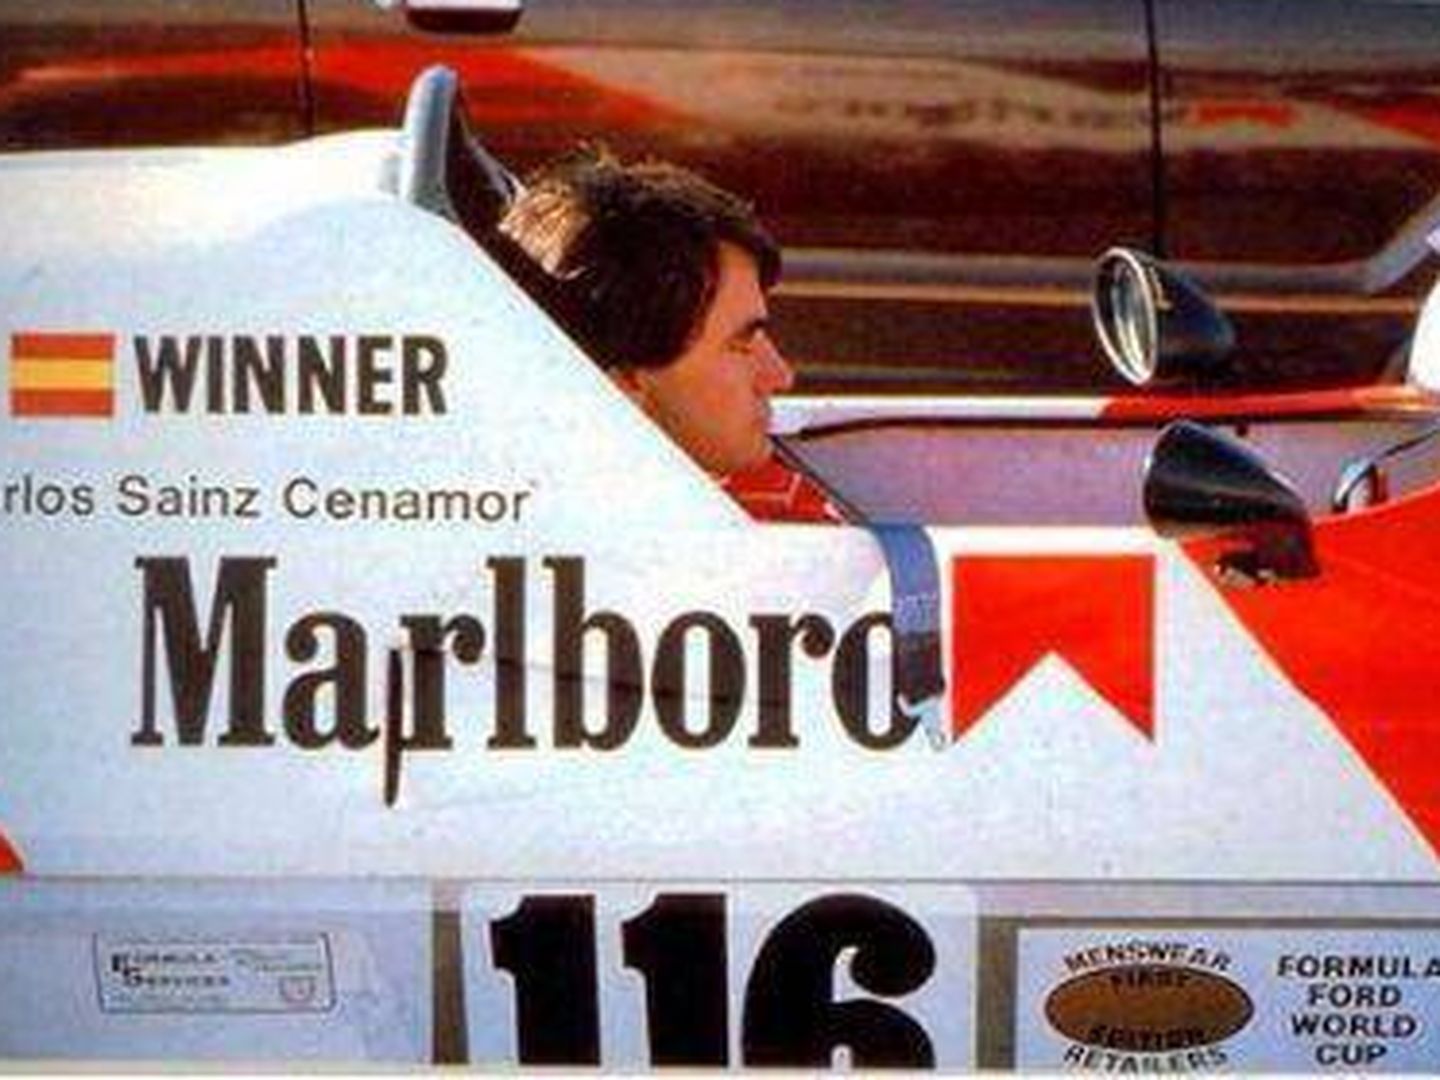 Carlos sainz padre supo de la mano dura de los comisarios para respetar los límites en el Festival de Fórmula Ford de 1982